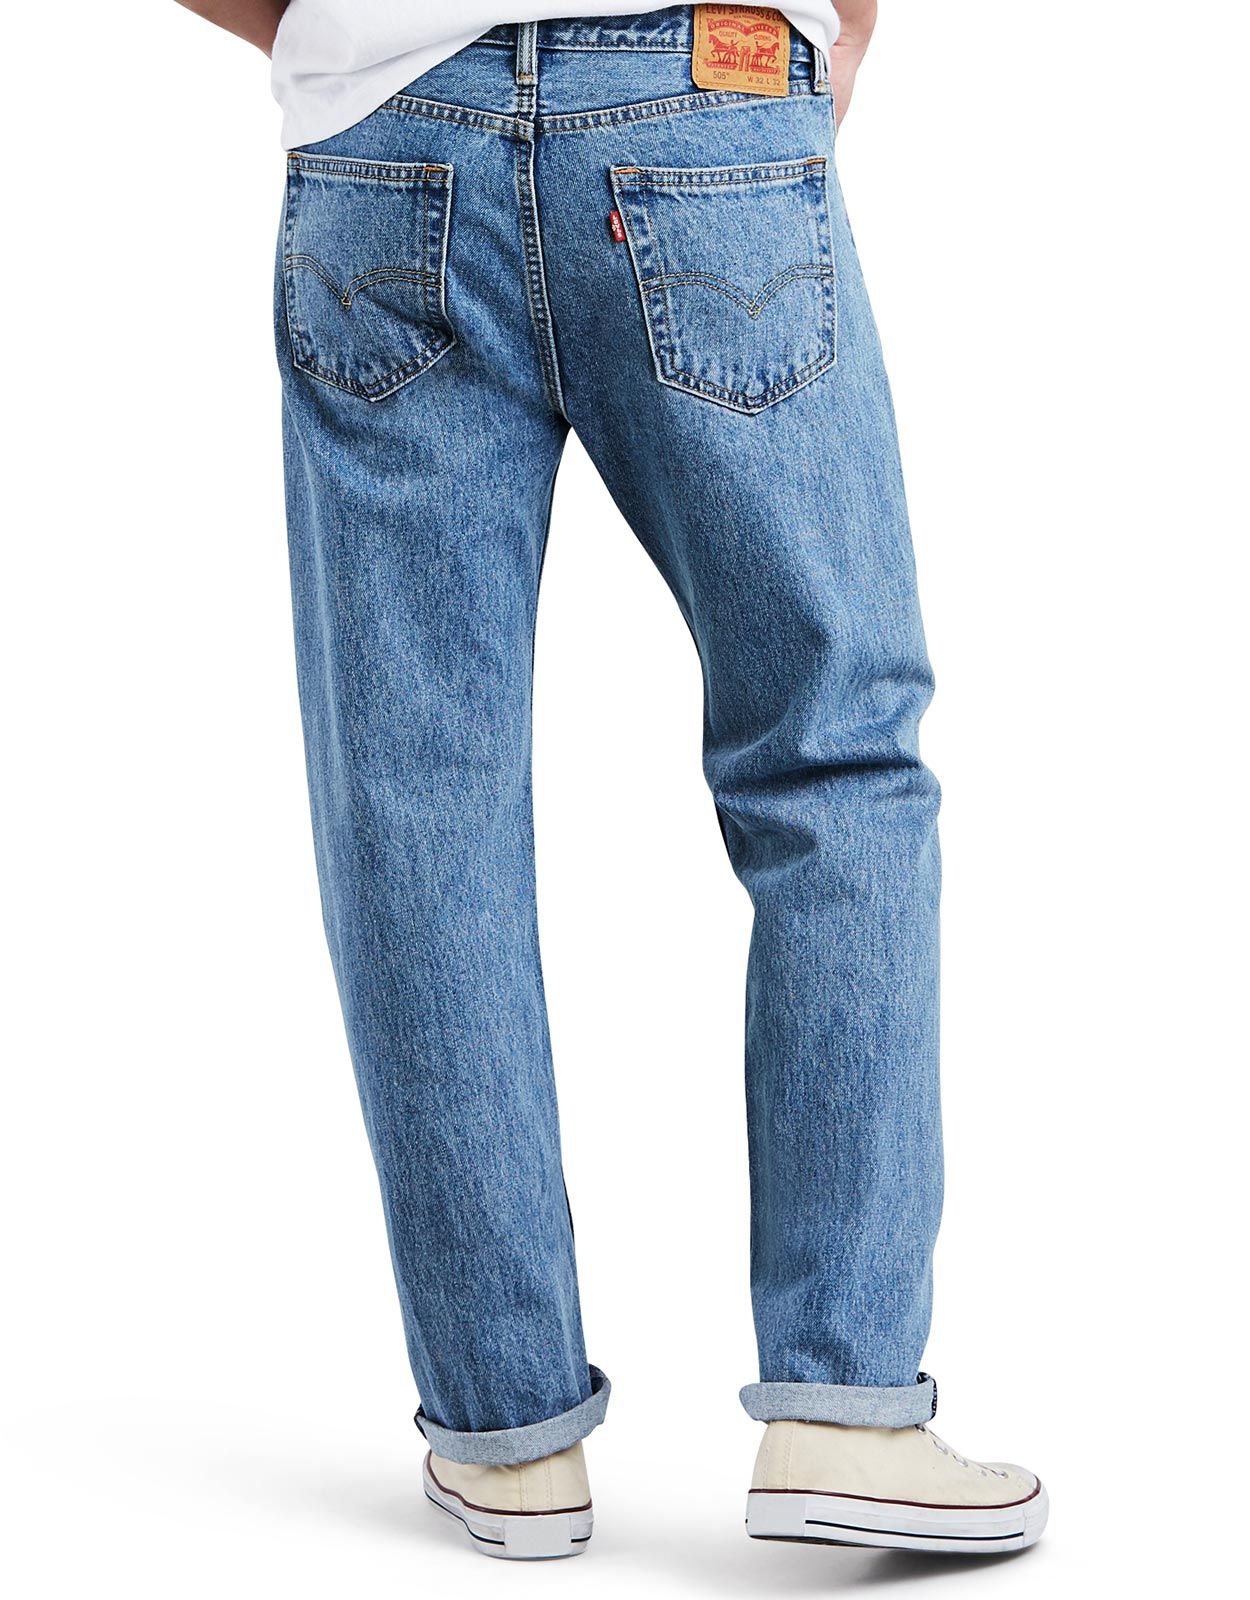 Levi's Men's 505 Regular Fit Jean, Golden Top, 34x36